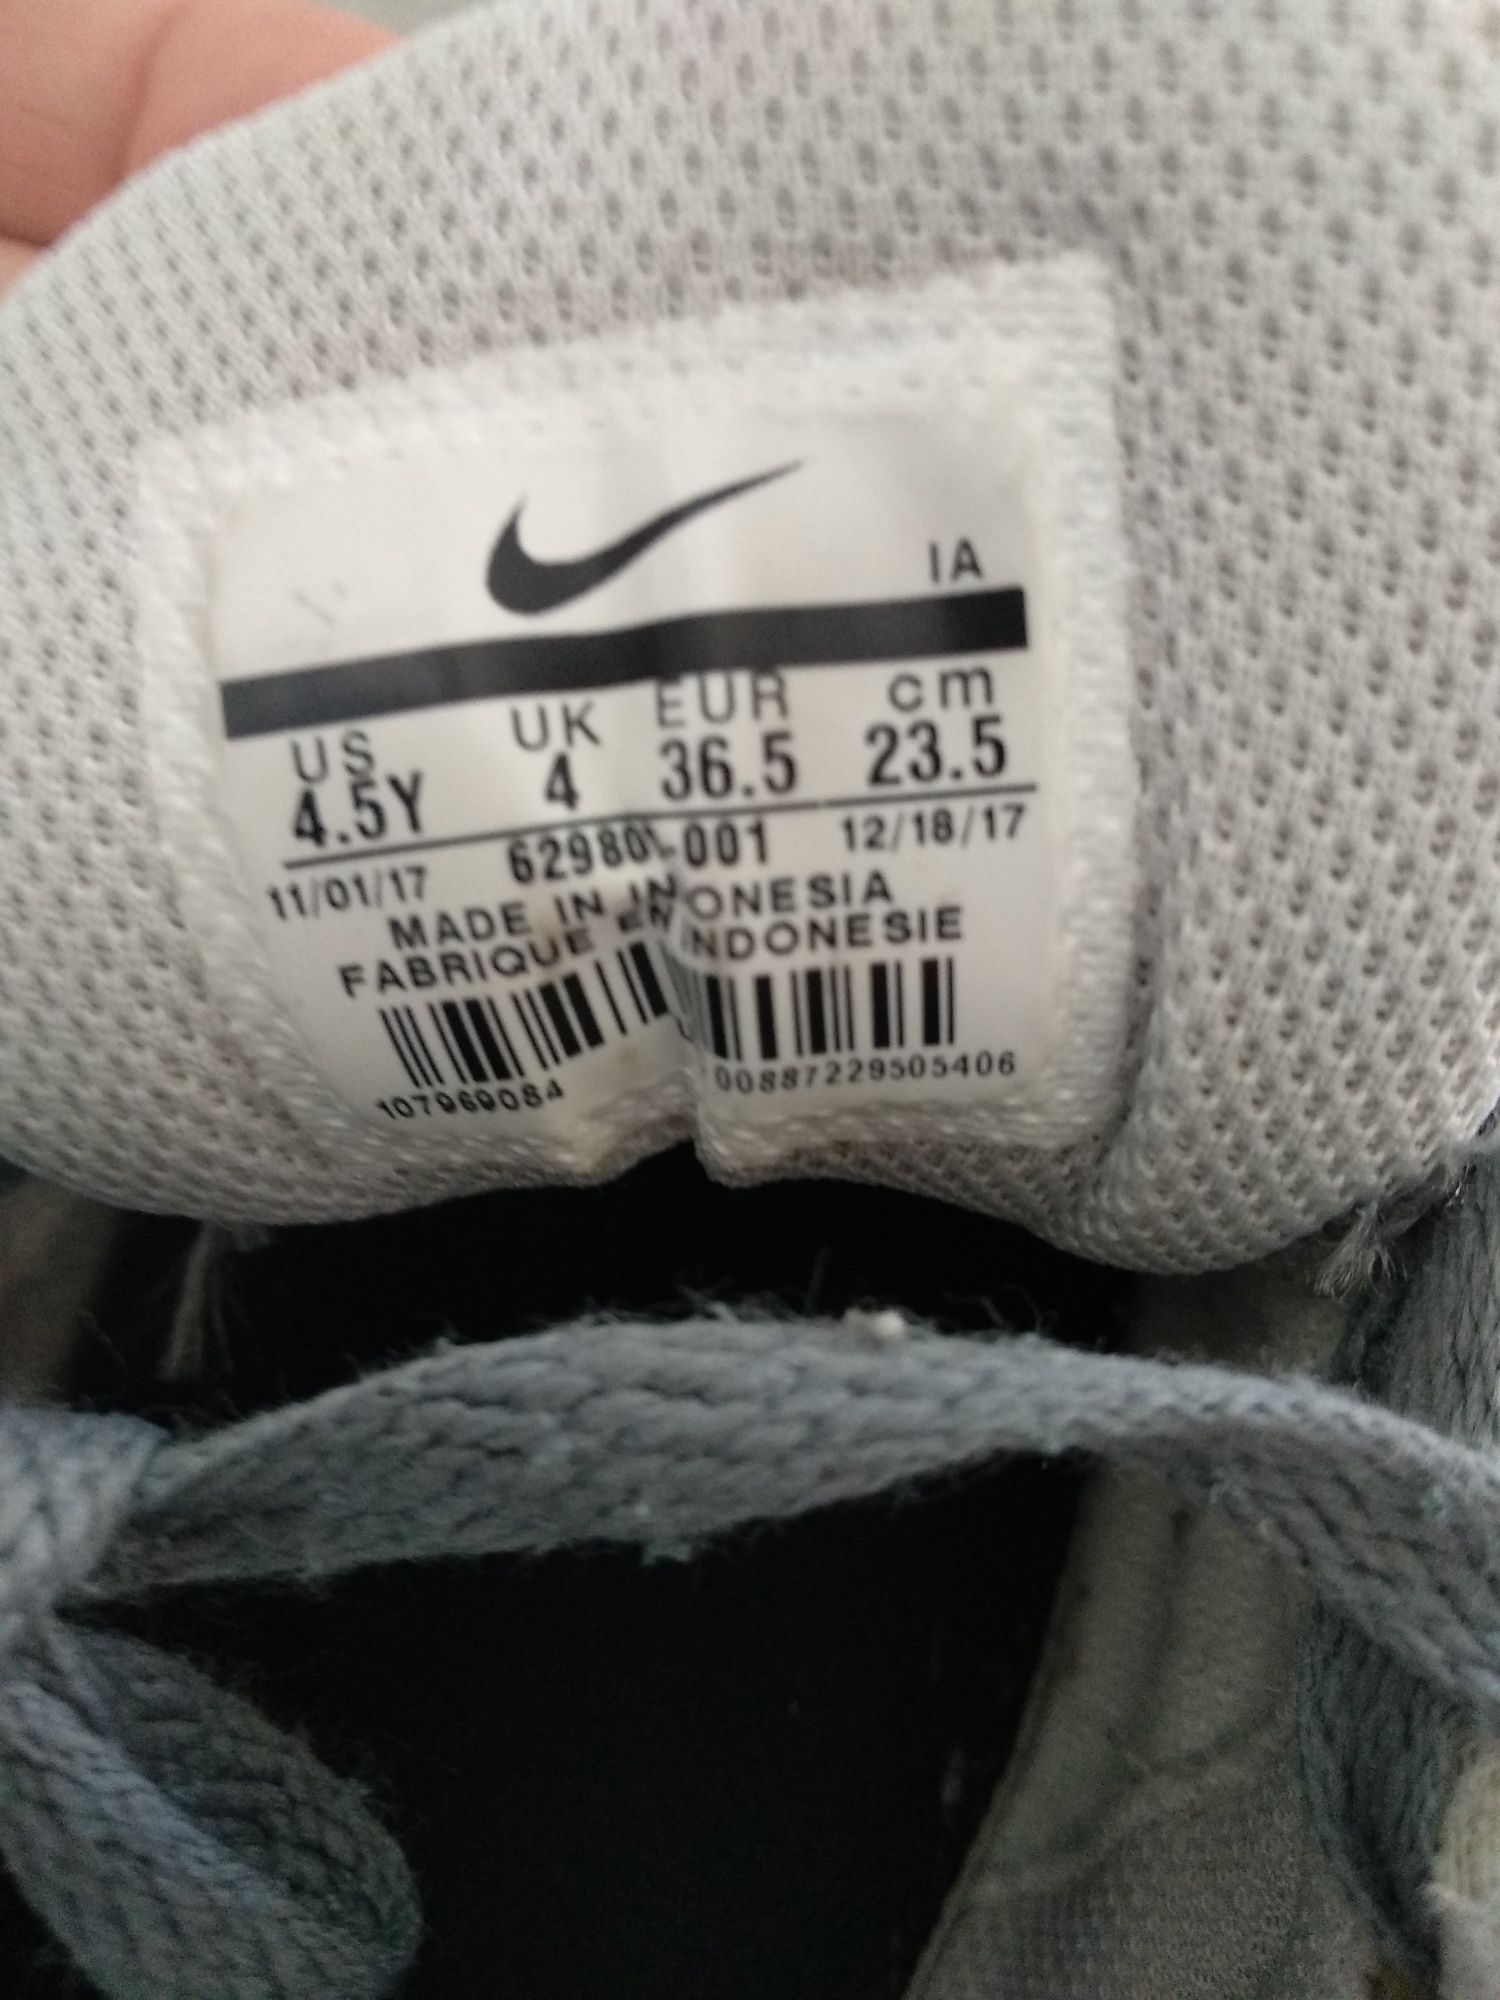 Sprzedam buty sportowe Nike 36.5rozmiar